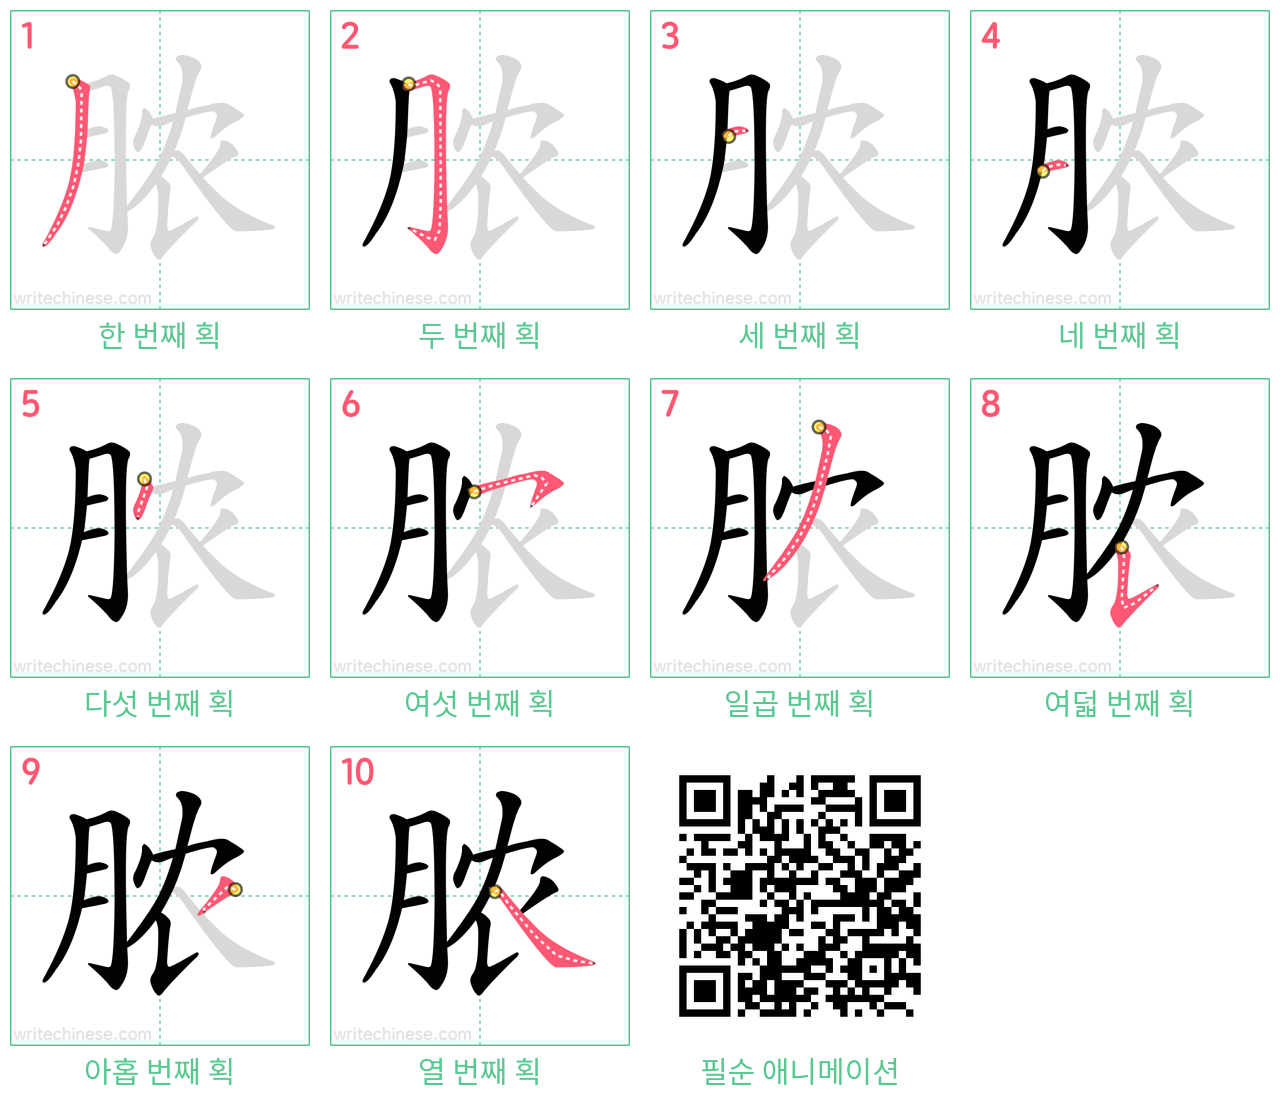 脓 step-by-step stroke order diagrams